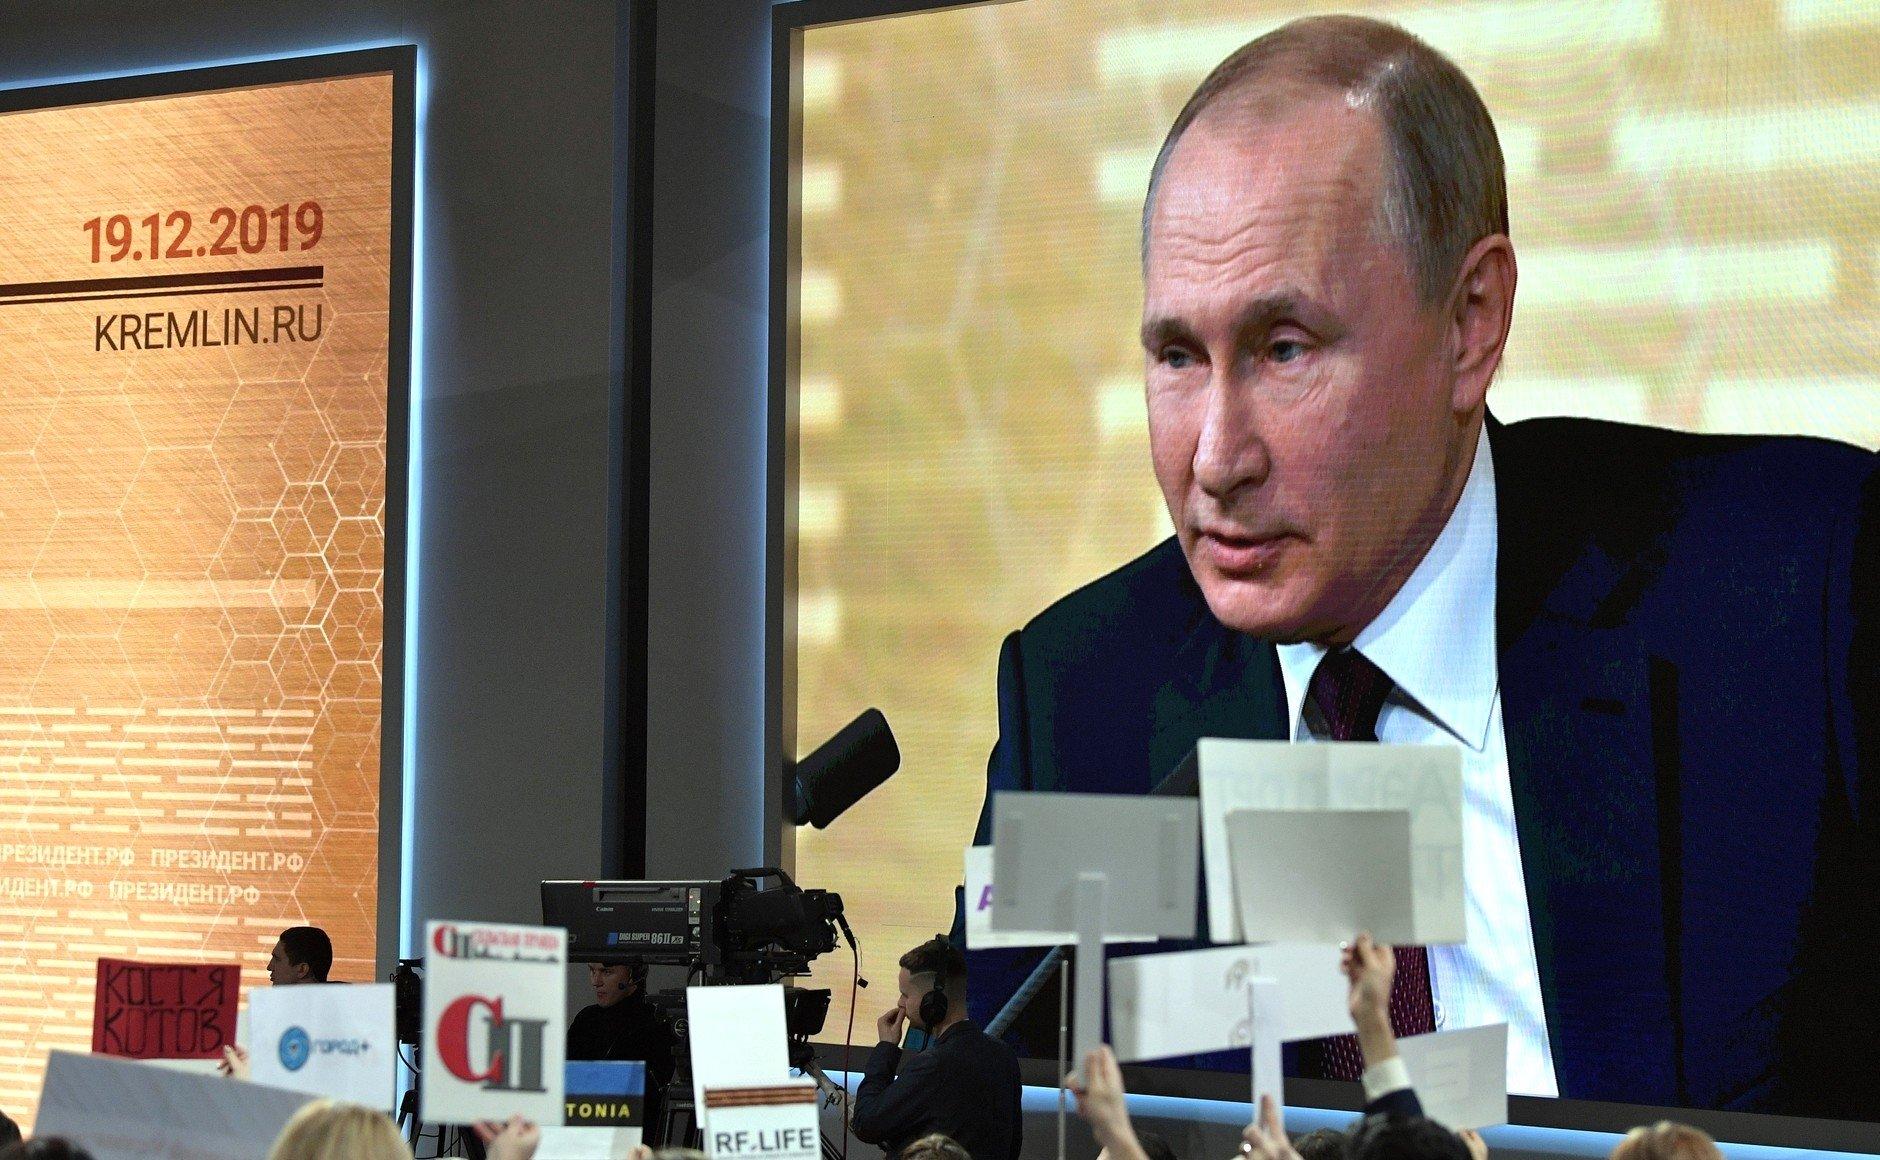 Postać mężczyzny na ekranie - Władimir Putin